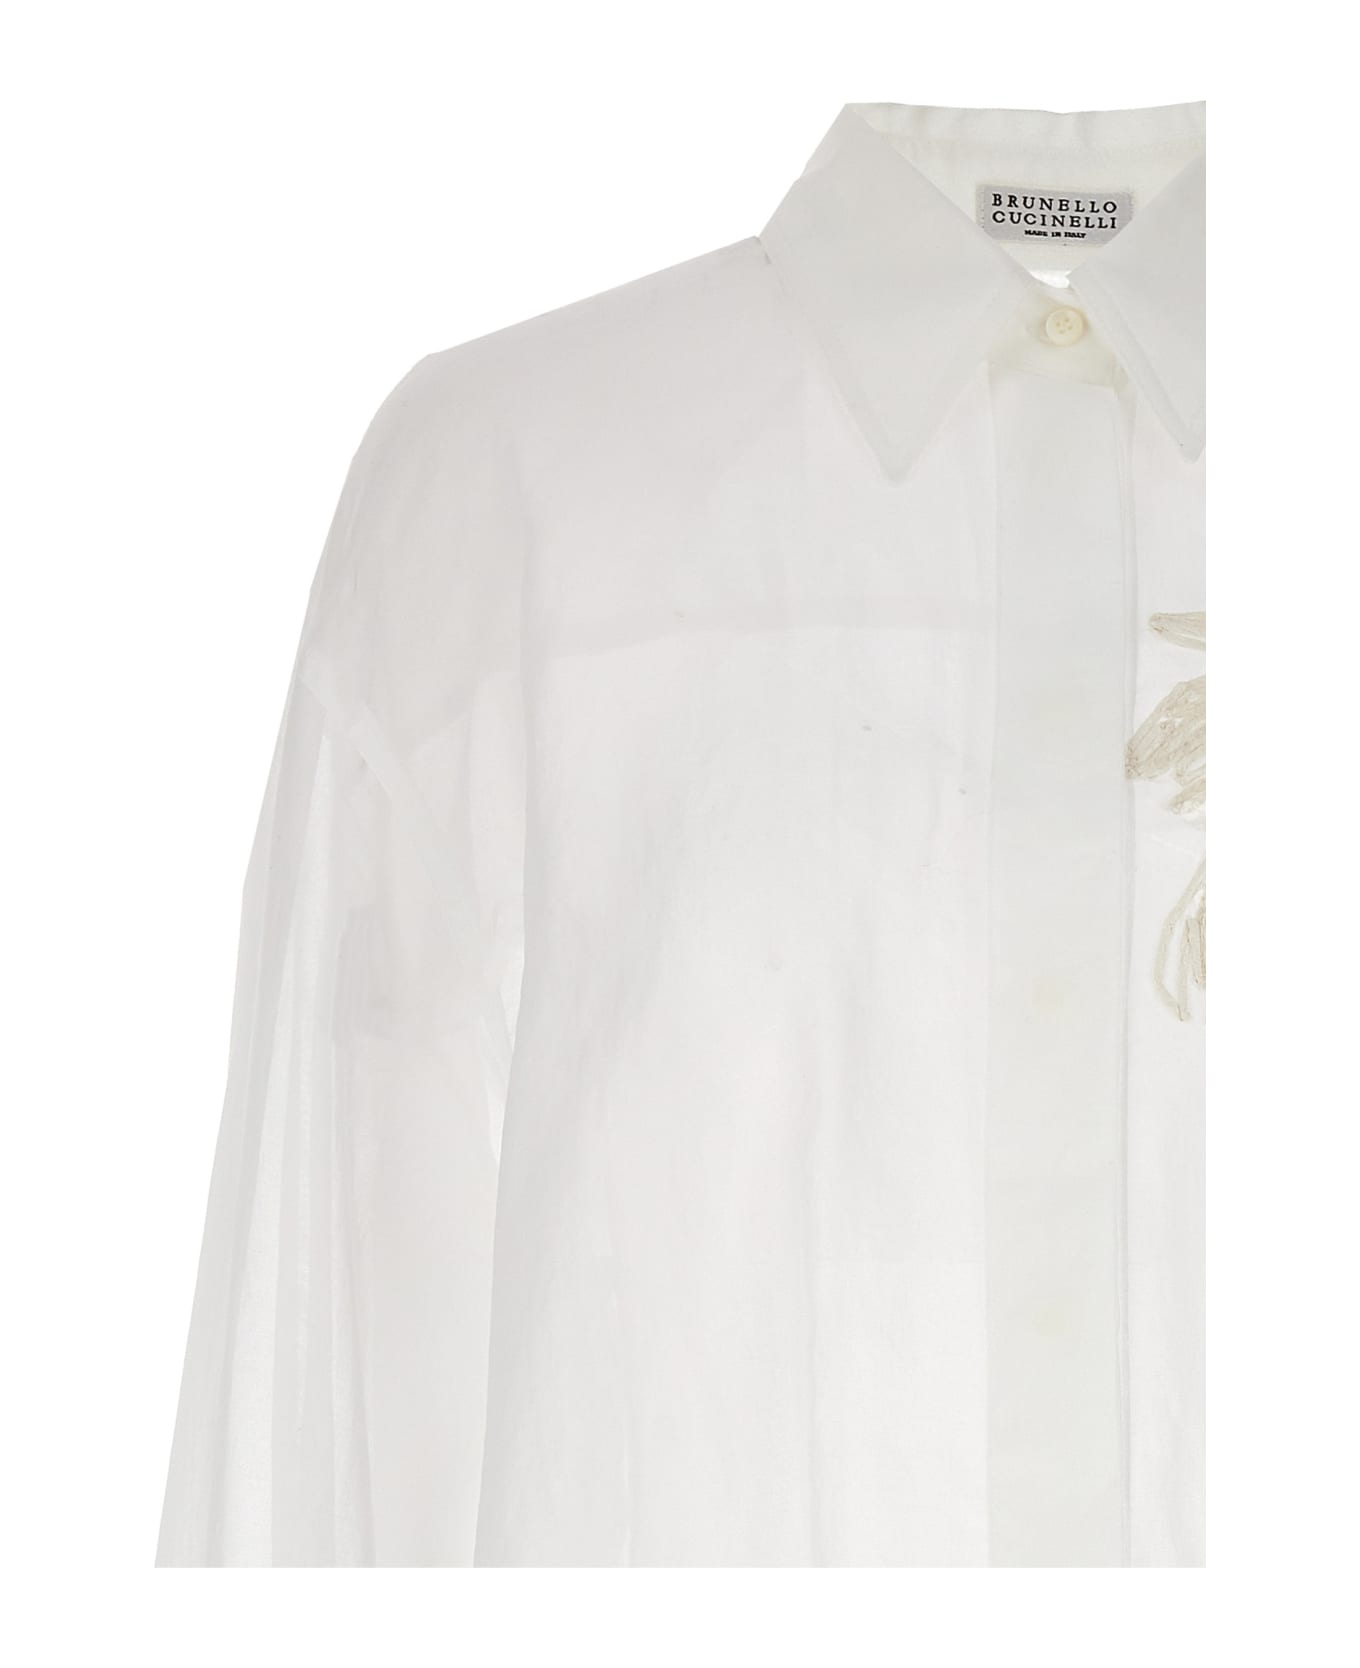 Brunello Cucinelli Floral Embroidery Shirt - bianco ottico